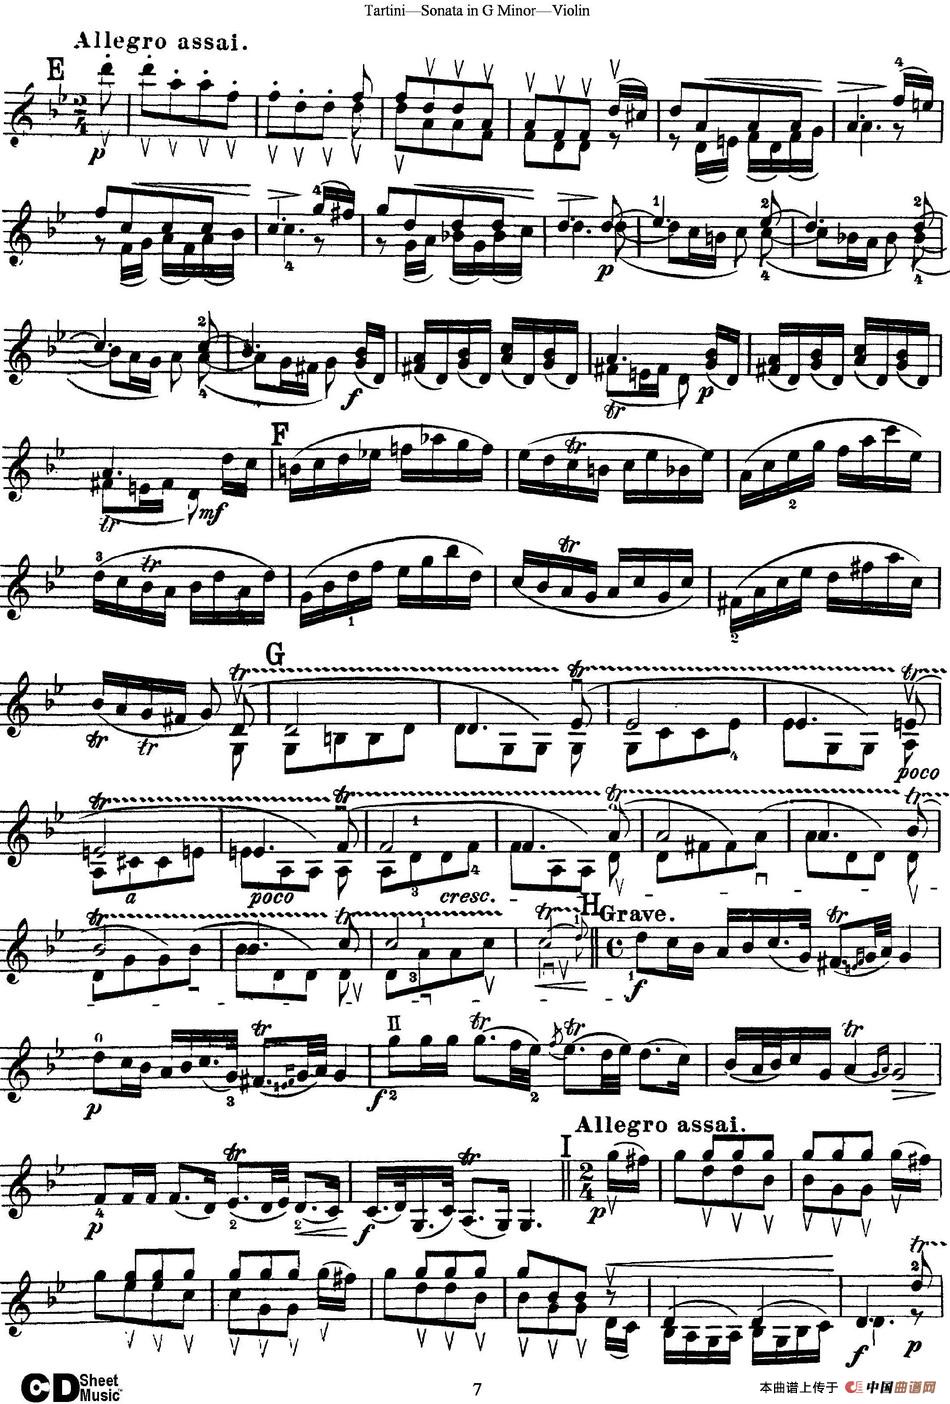 Violin Sonata in G Minor（The Devils Trill）